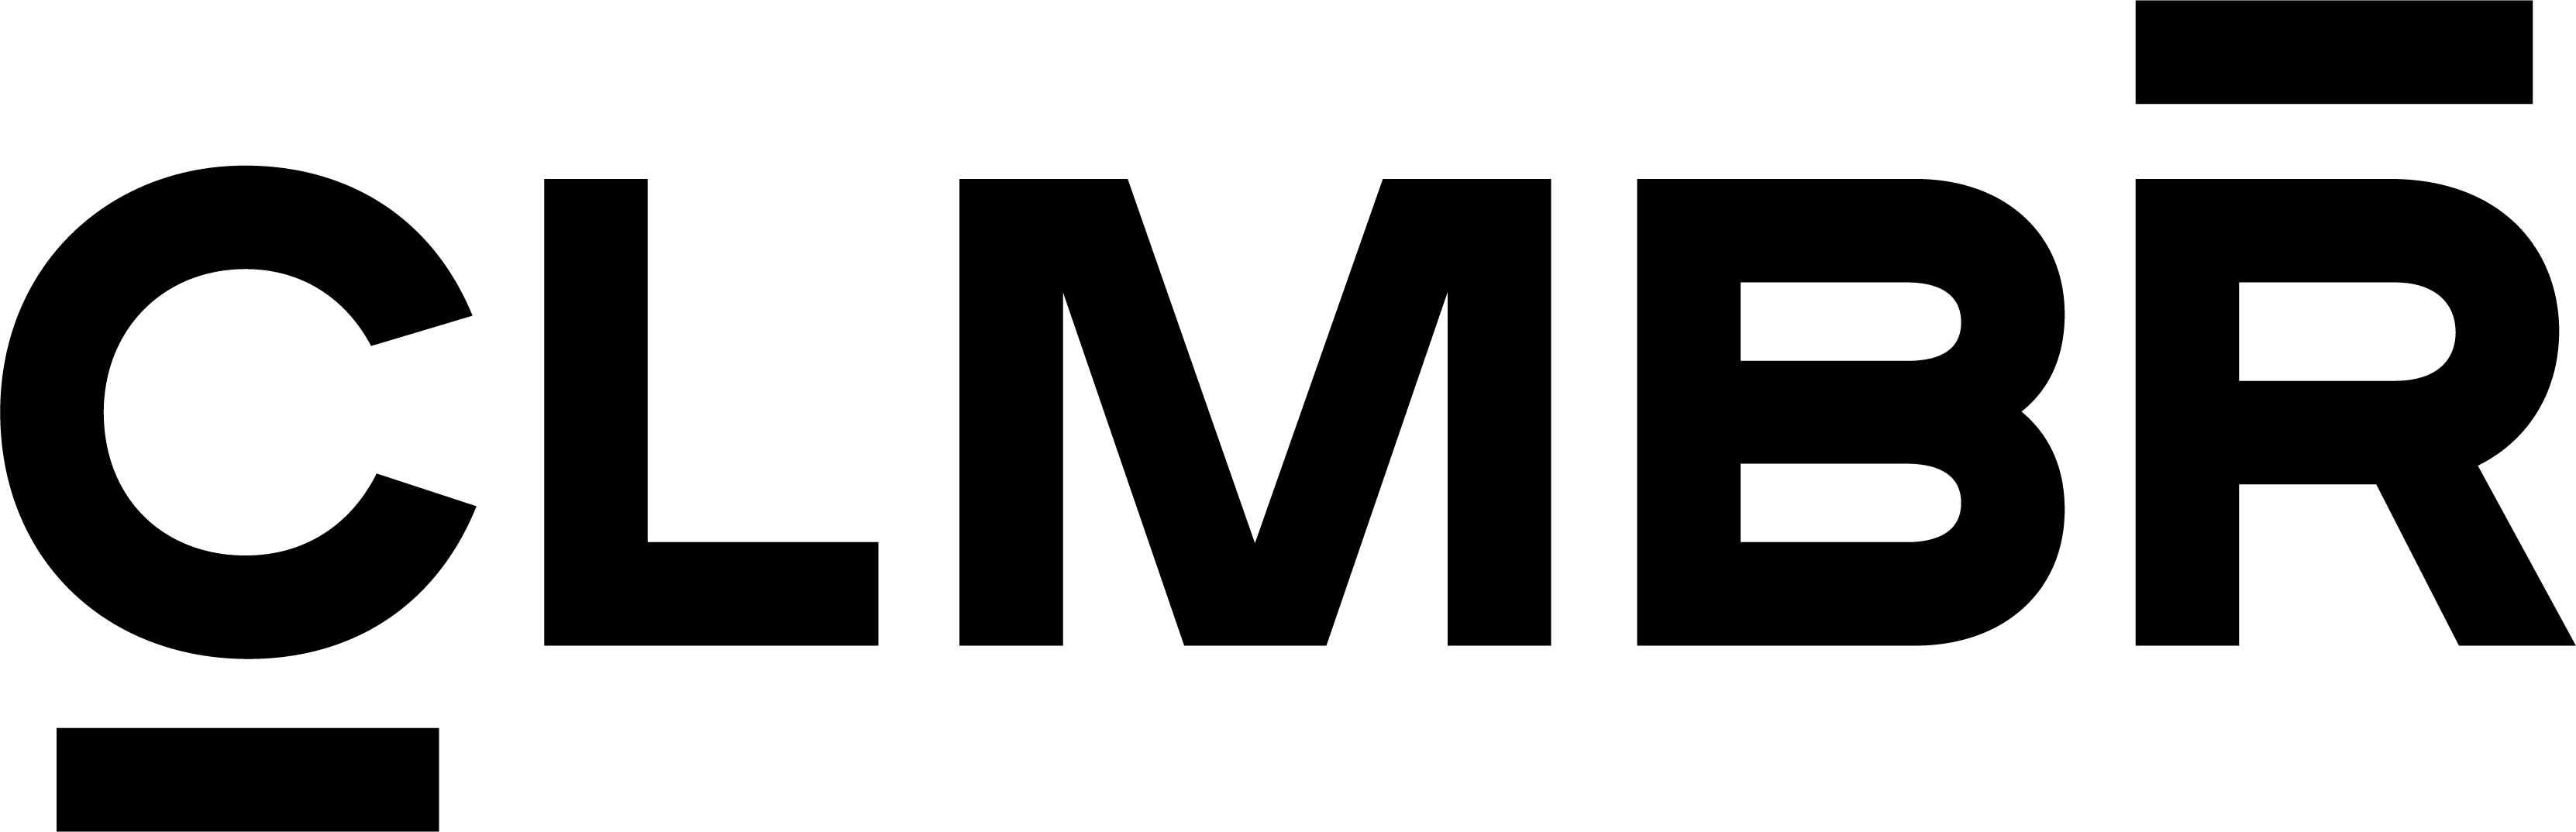 CLMBR_logo